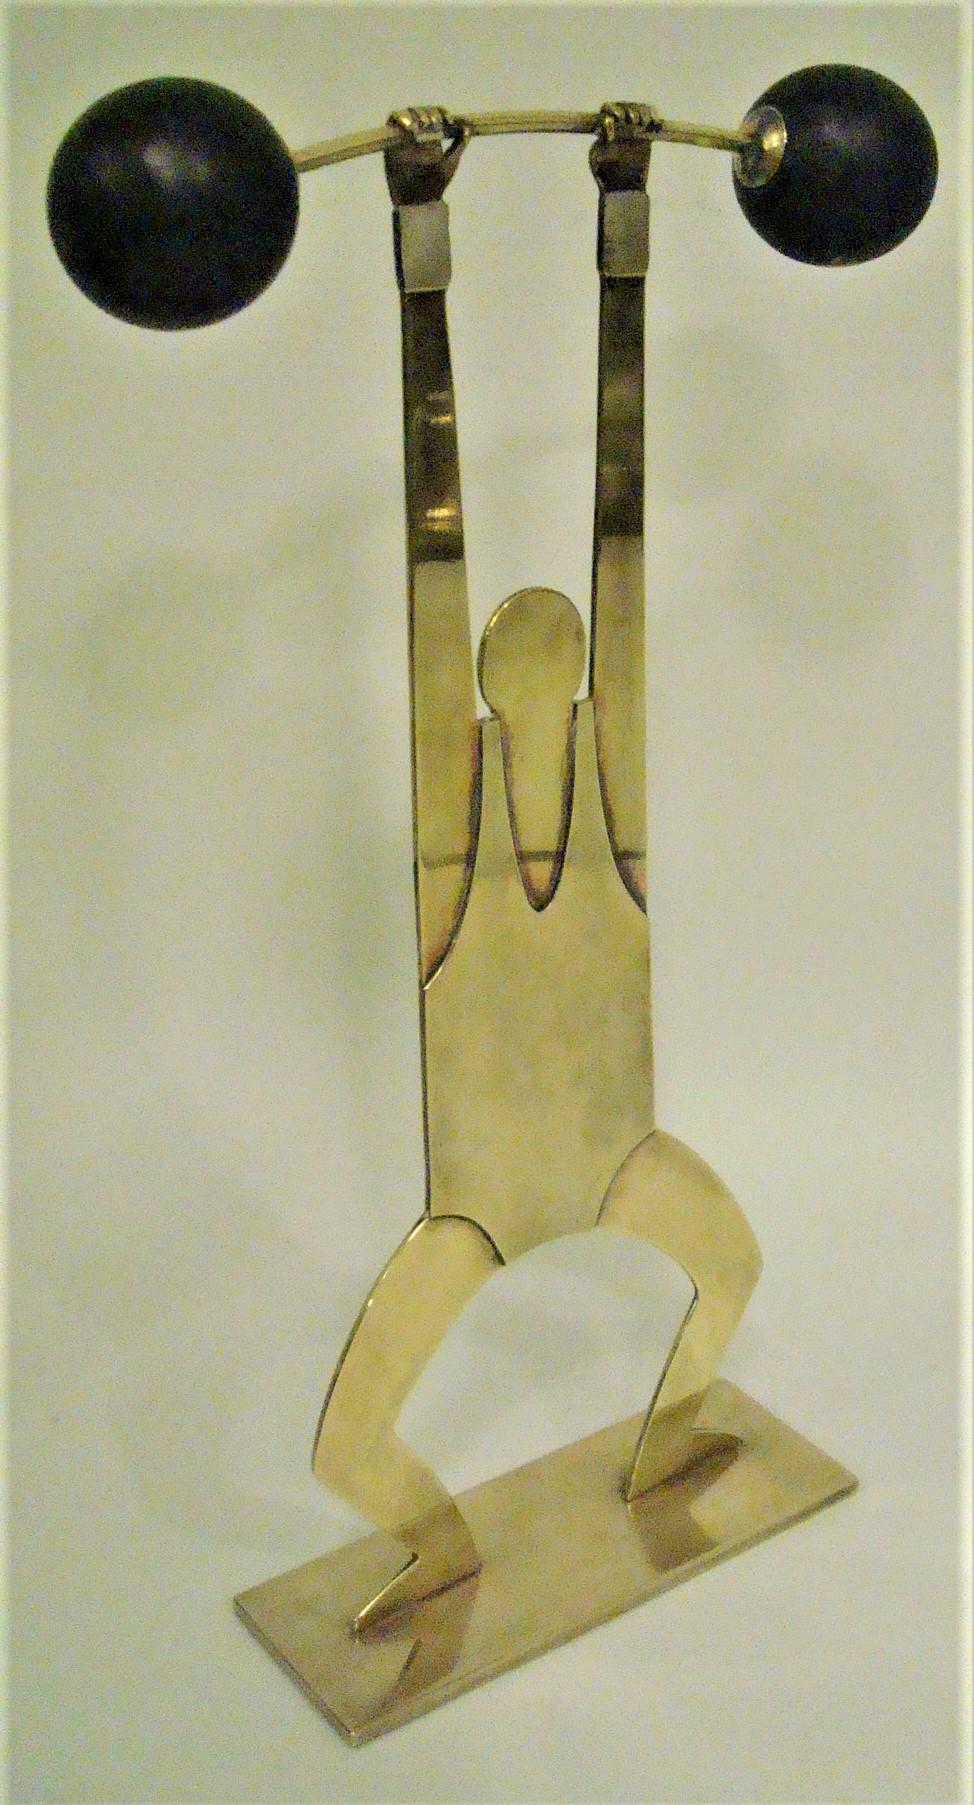 Art Deco / Vintage liftweight sculpture.
Weightlifter Hagenauer mid-century / Art Deco Sculpture - Austria 1930
Franz Hagenauer sculpture of a weightlifter.
Marked: WHW - Atelier Hagenauer Wien - Made in Austria